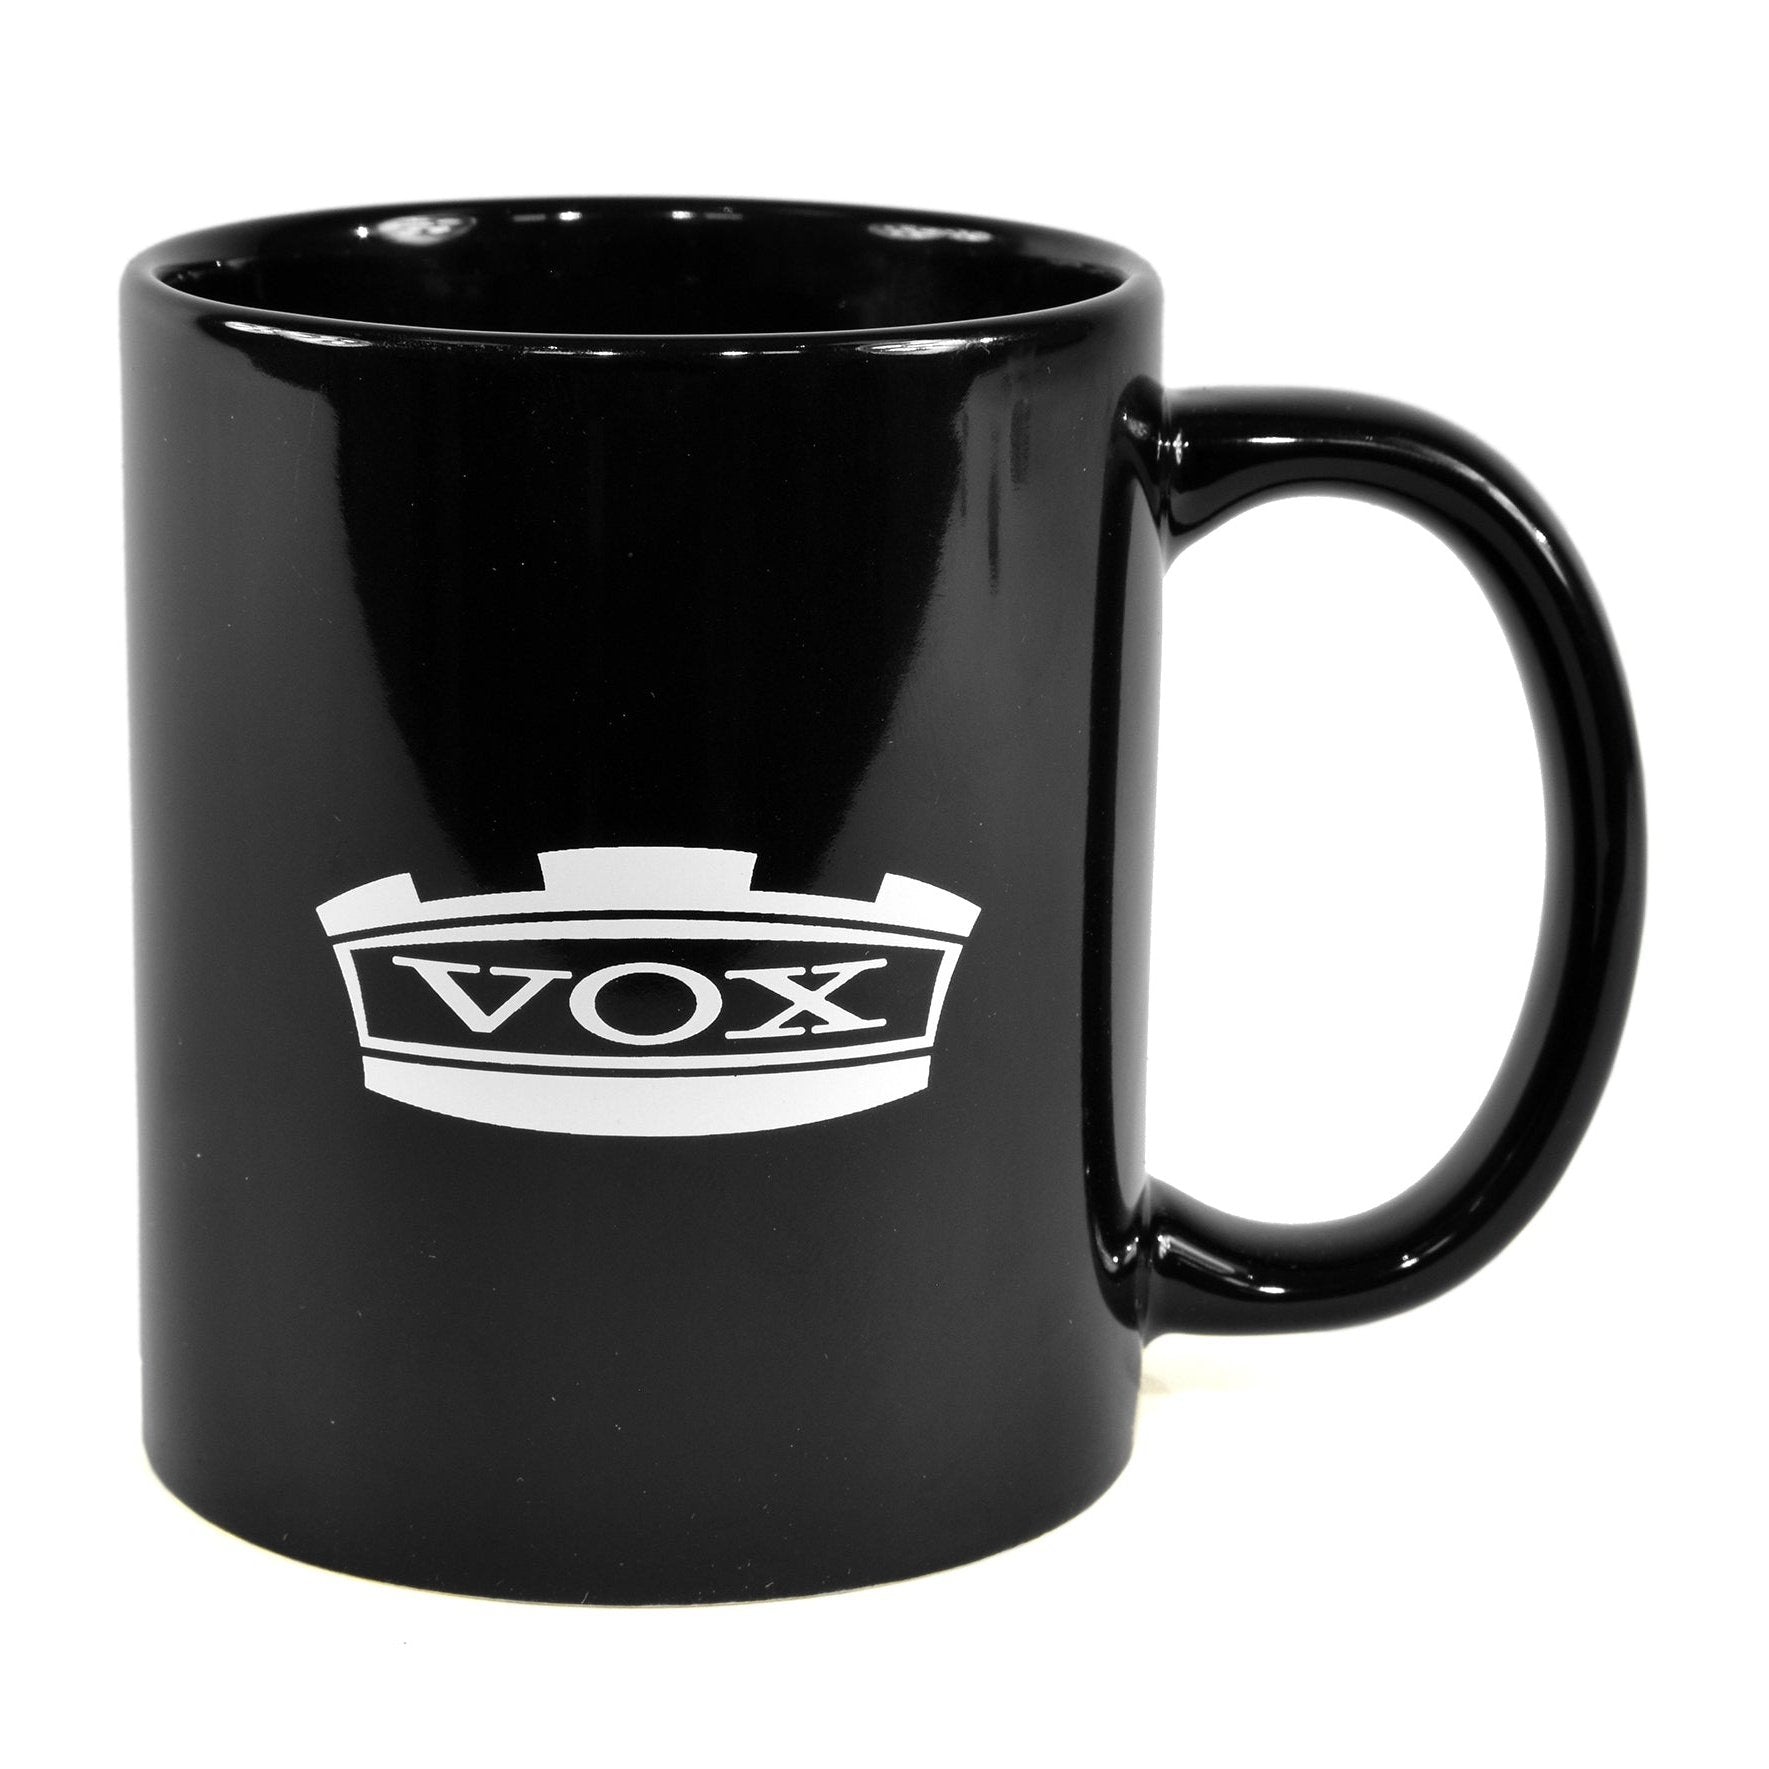 Vox Logo Mug 1